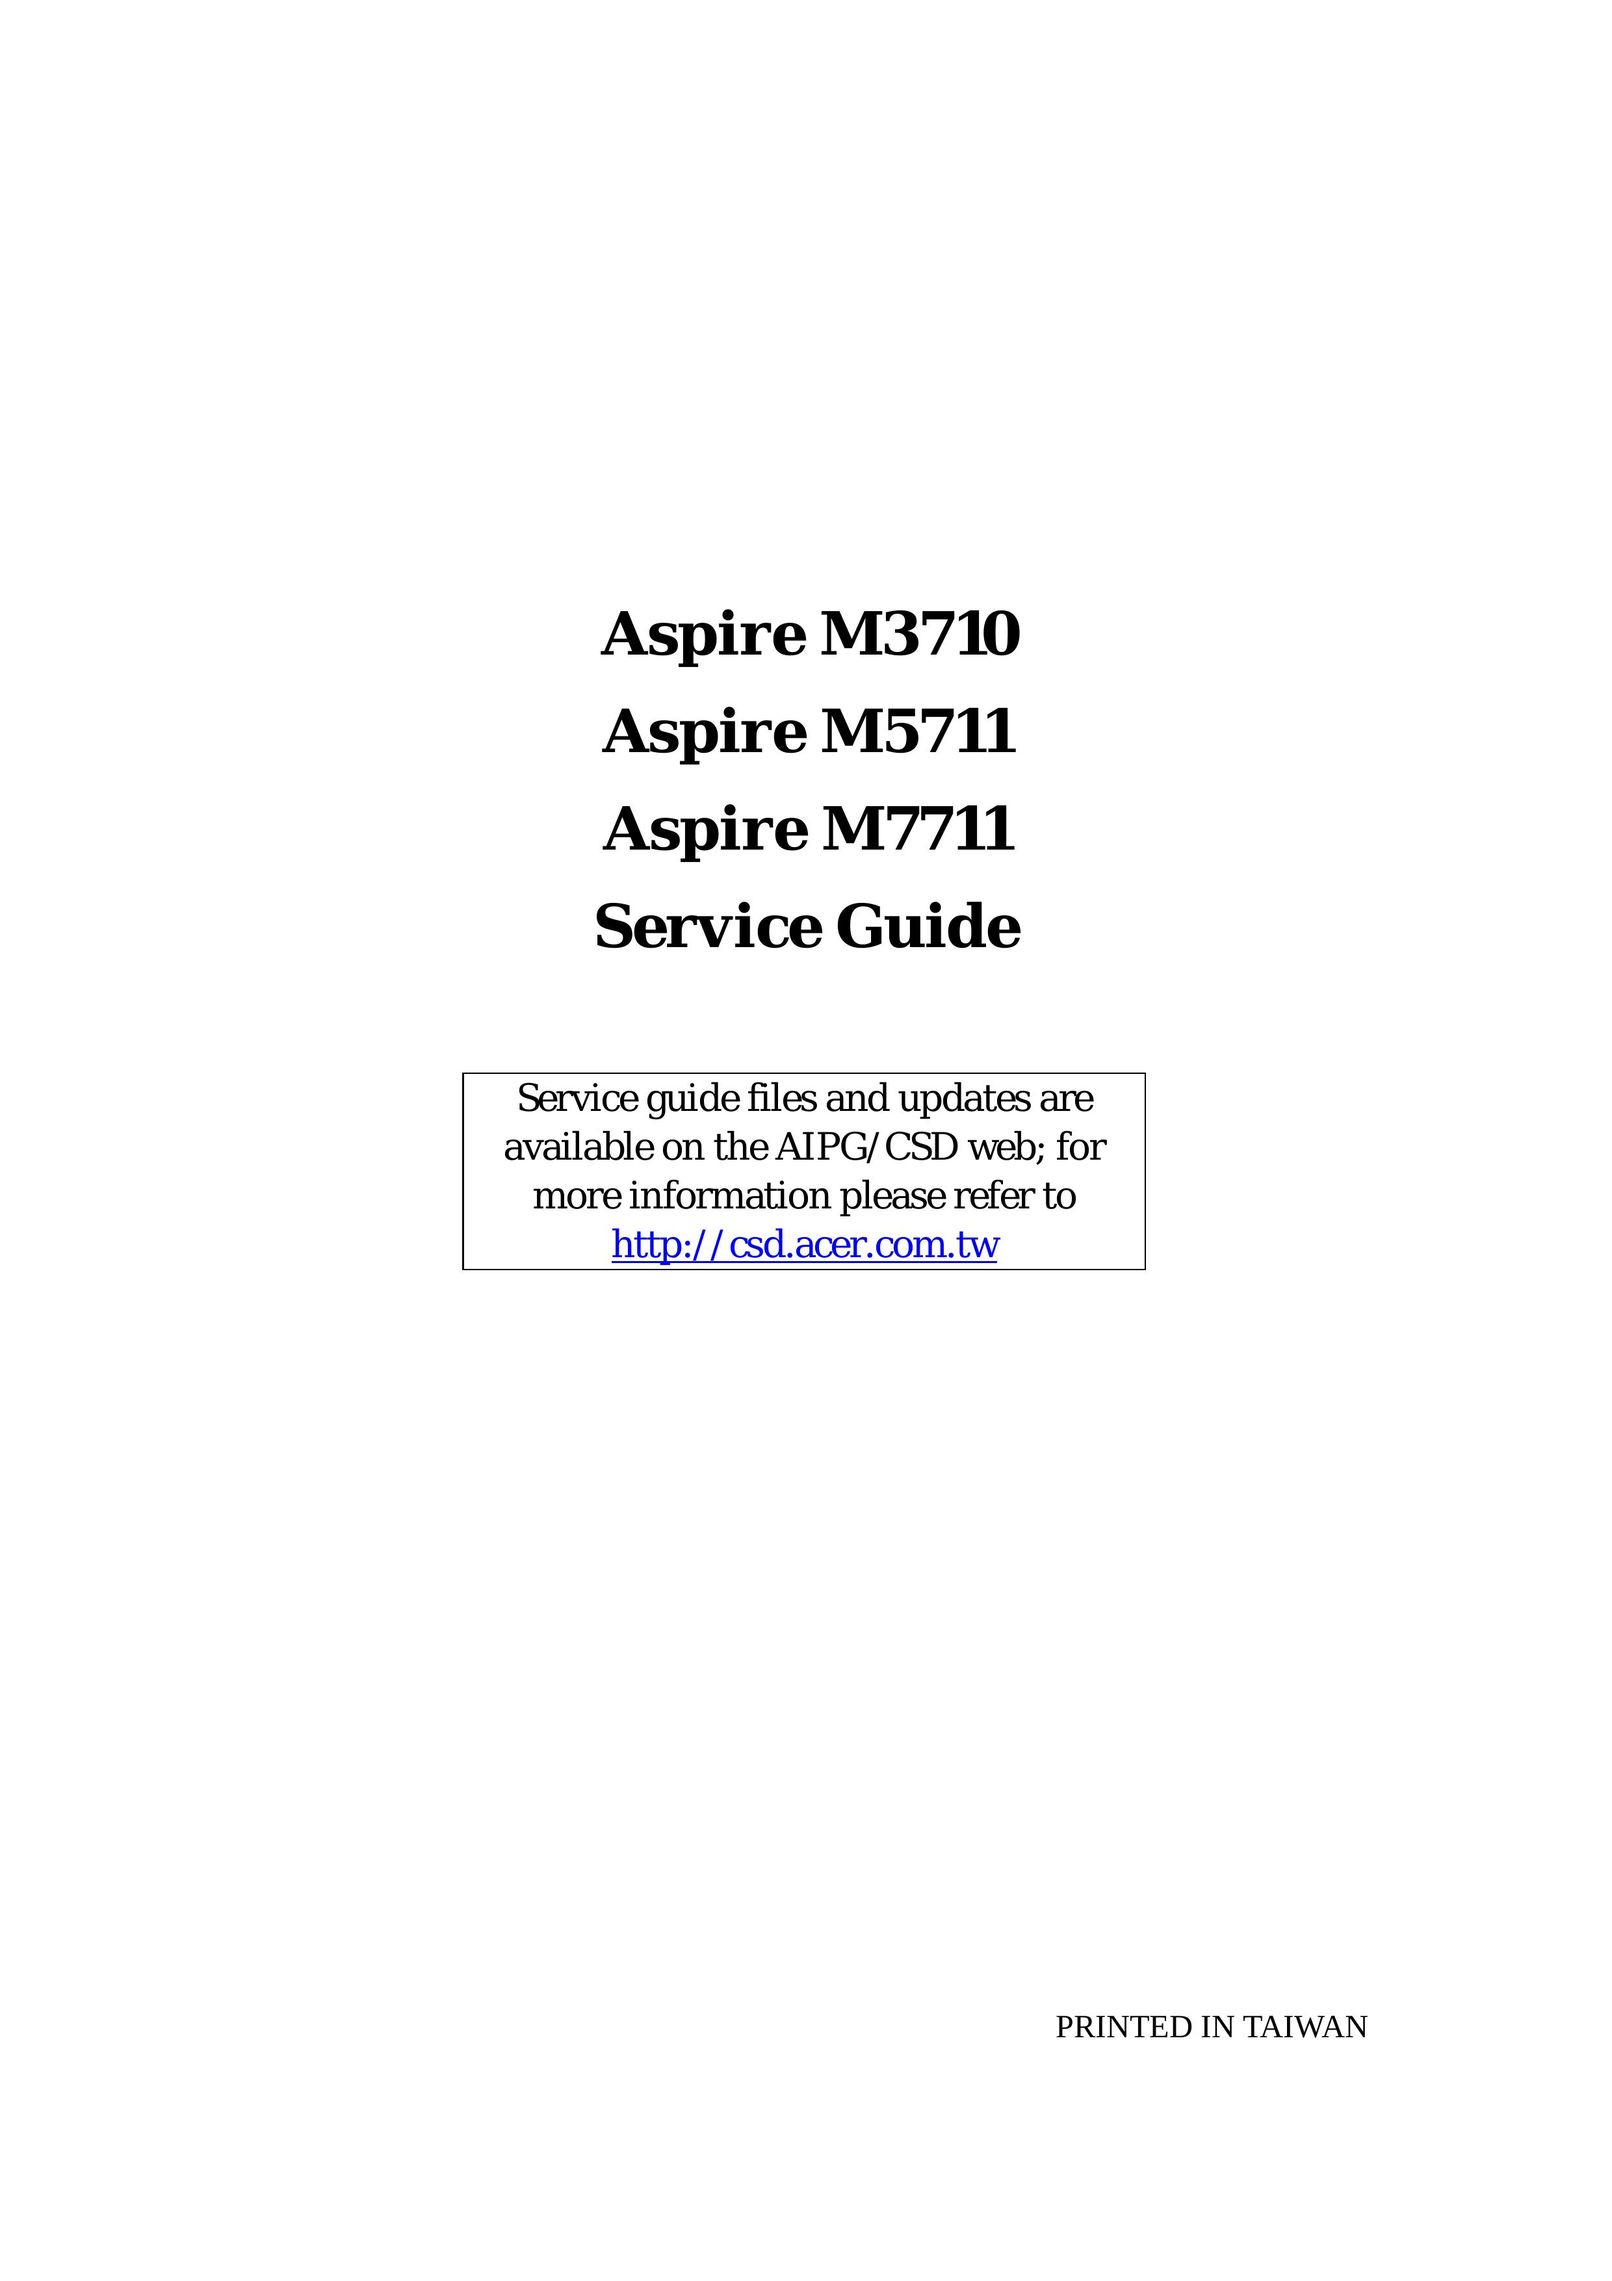 Aspire Digital M5711 Computer Hardware User Manual